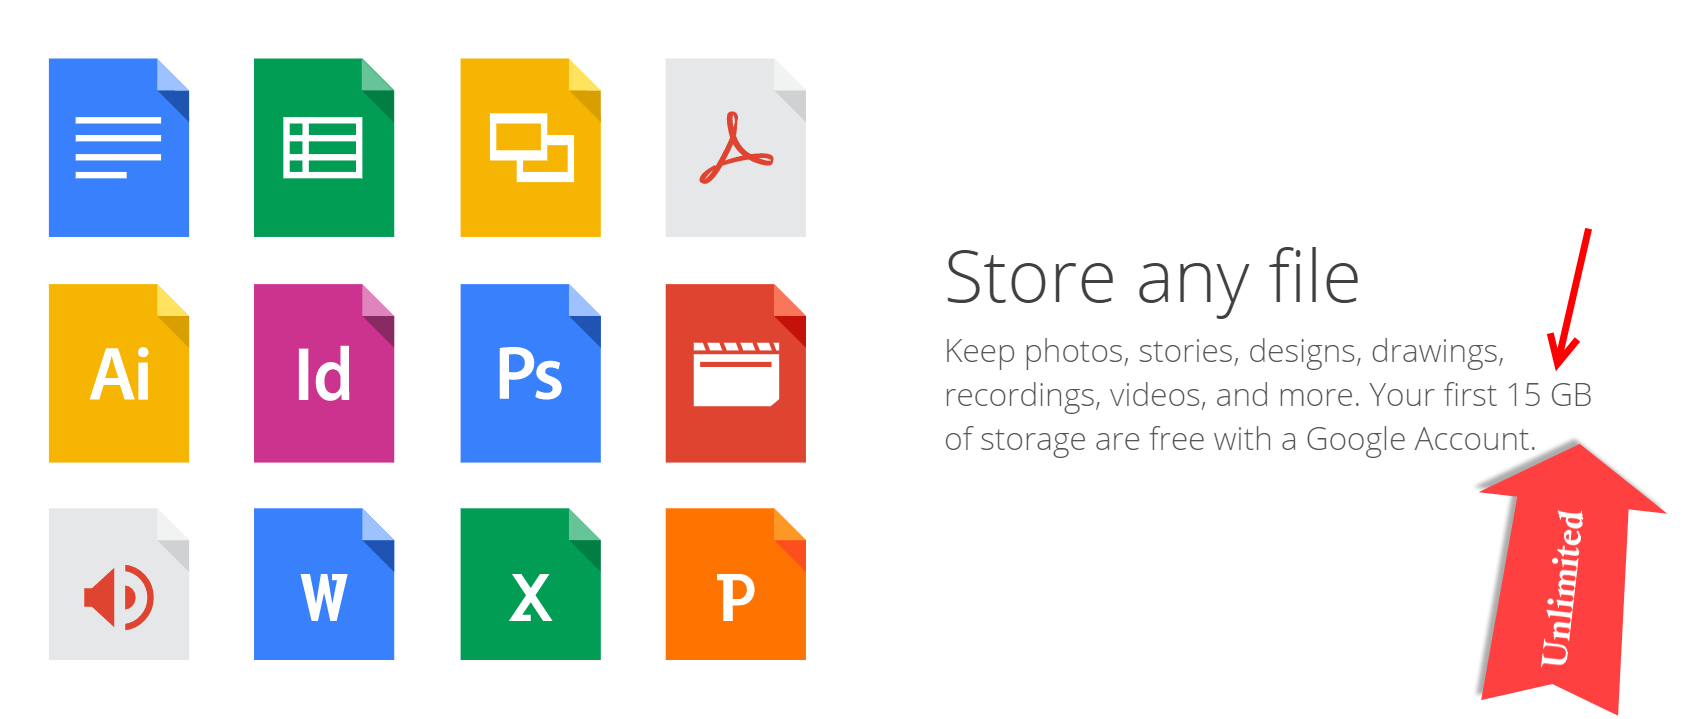 google drive free storage limits 115gb